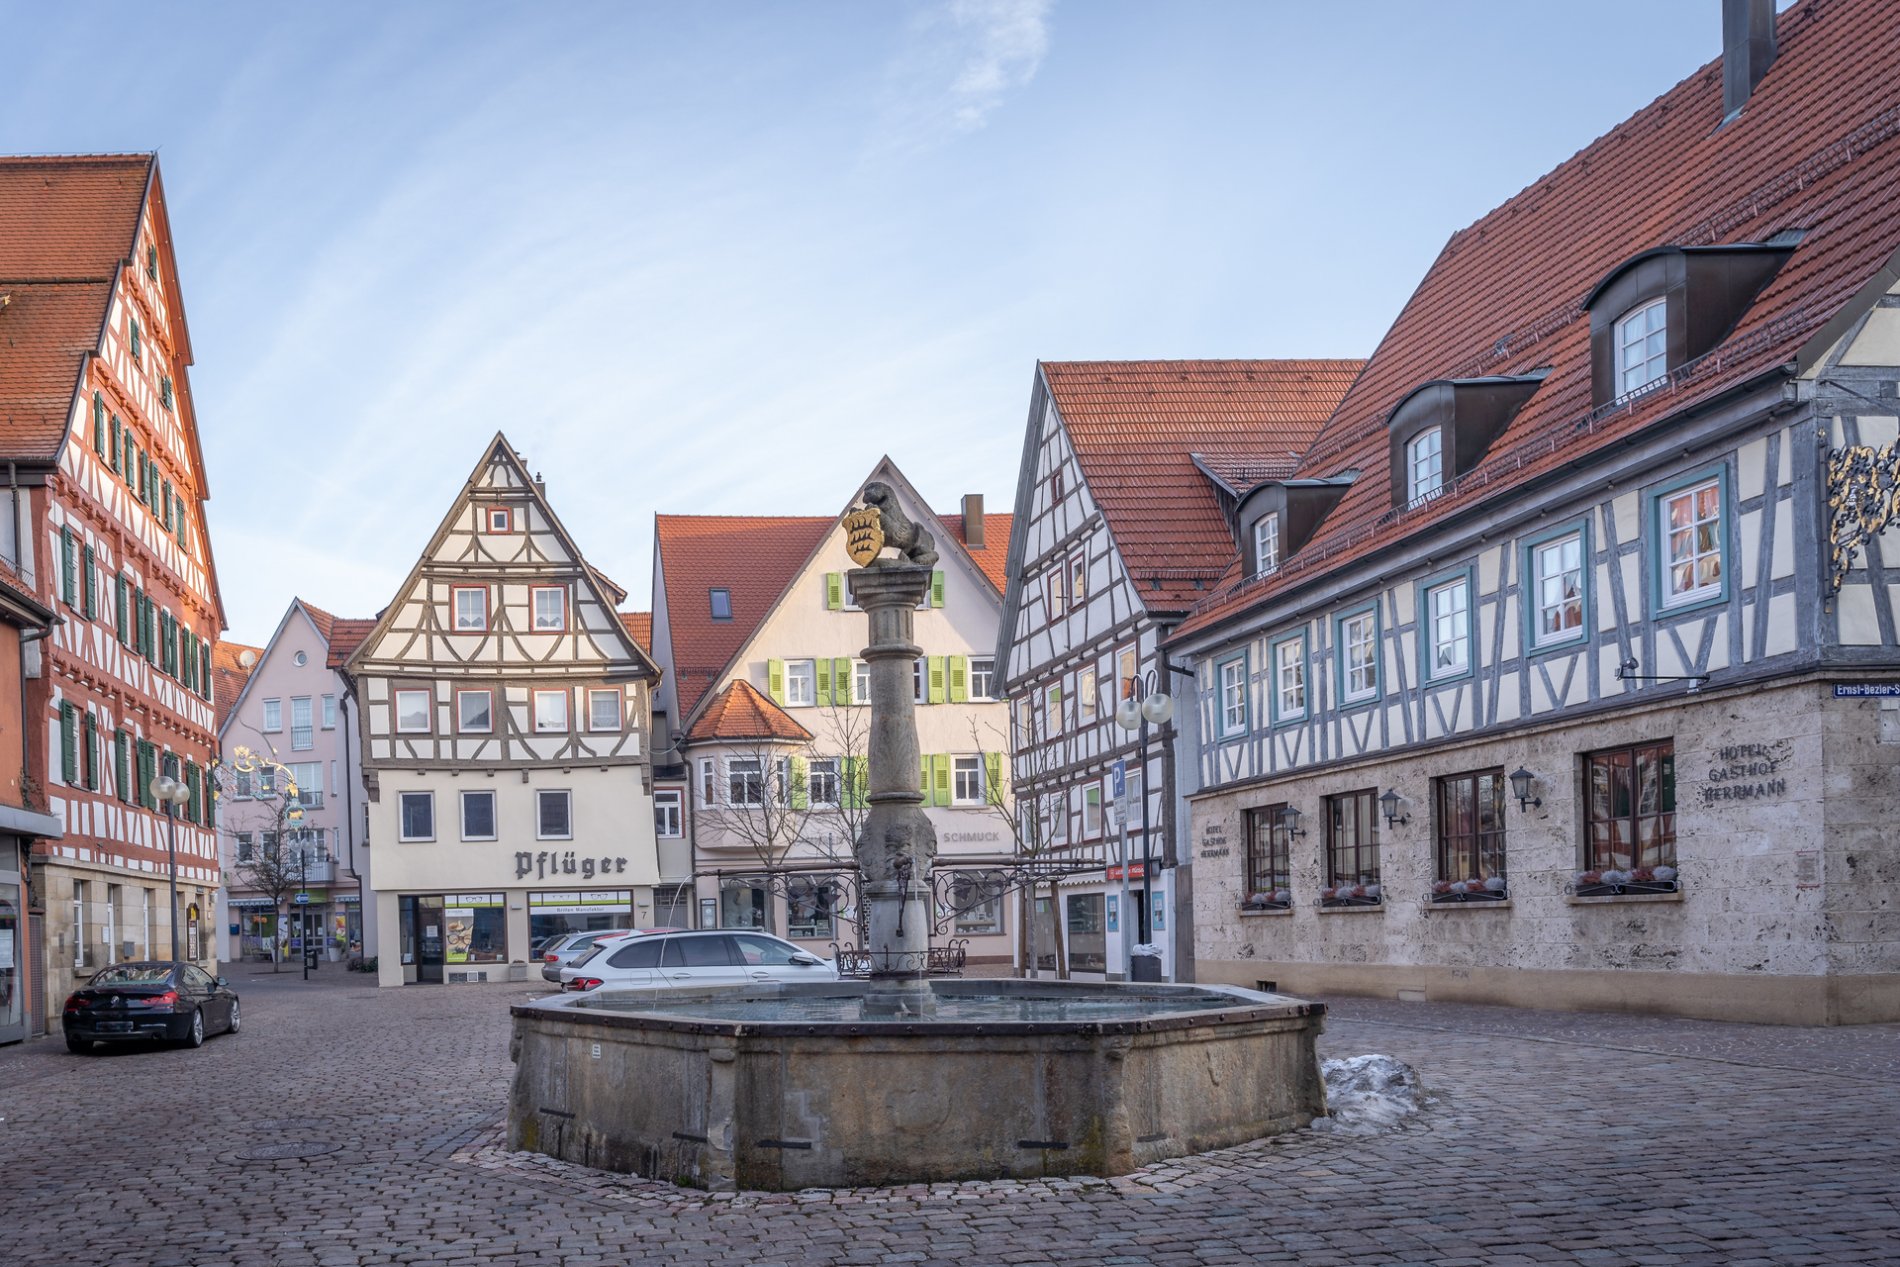 Der Marktplatz mit Marktbrunnen in Münsingen im Biosphärengebiet Schwäbische Alb. Ein großer Platz mit einem Brunnen in der Mitte an dessen Spitze ein Tier aus Stein und ein Wappen ist. Ringsherum sind Fachwerkhäuser.